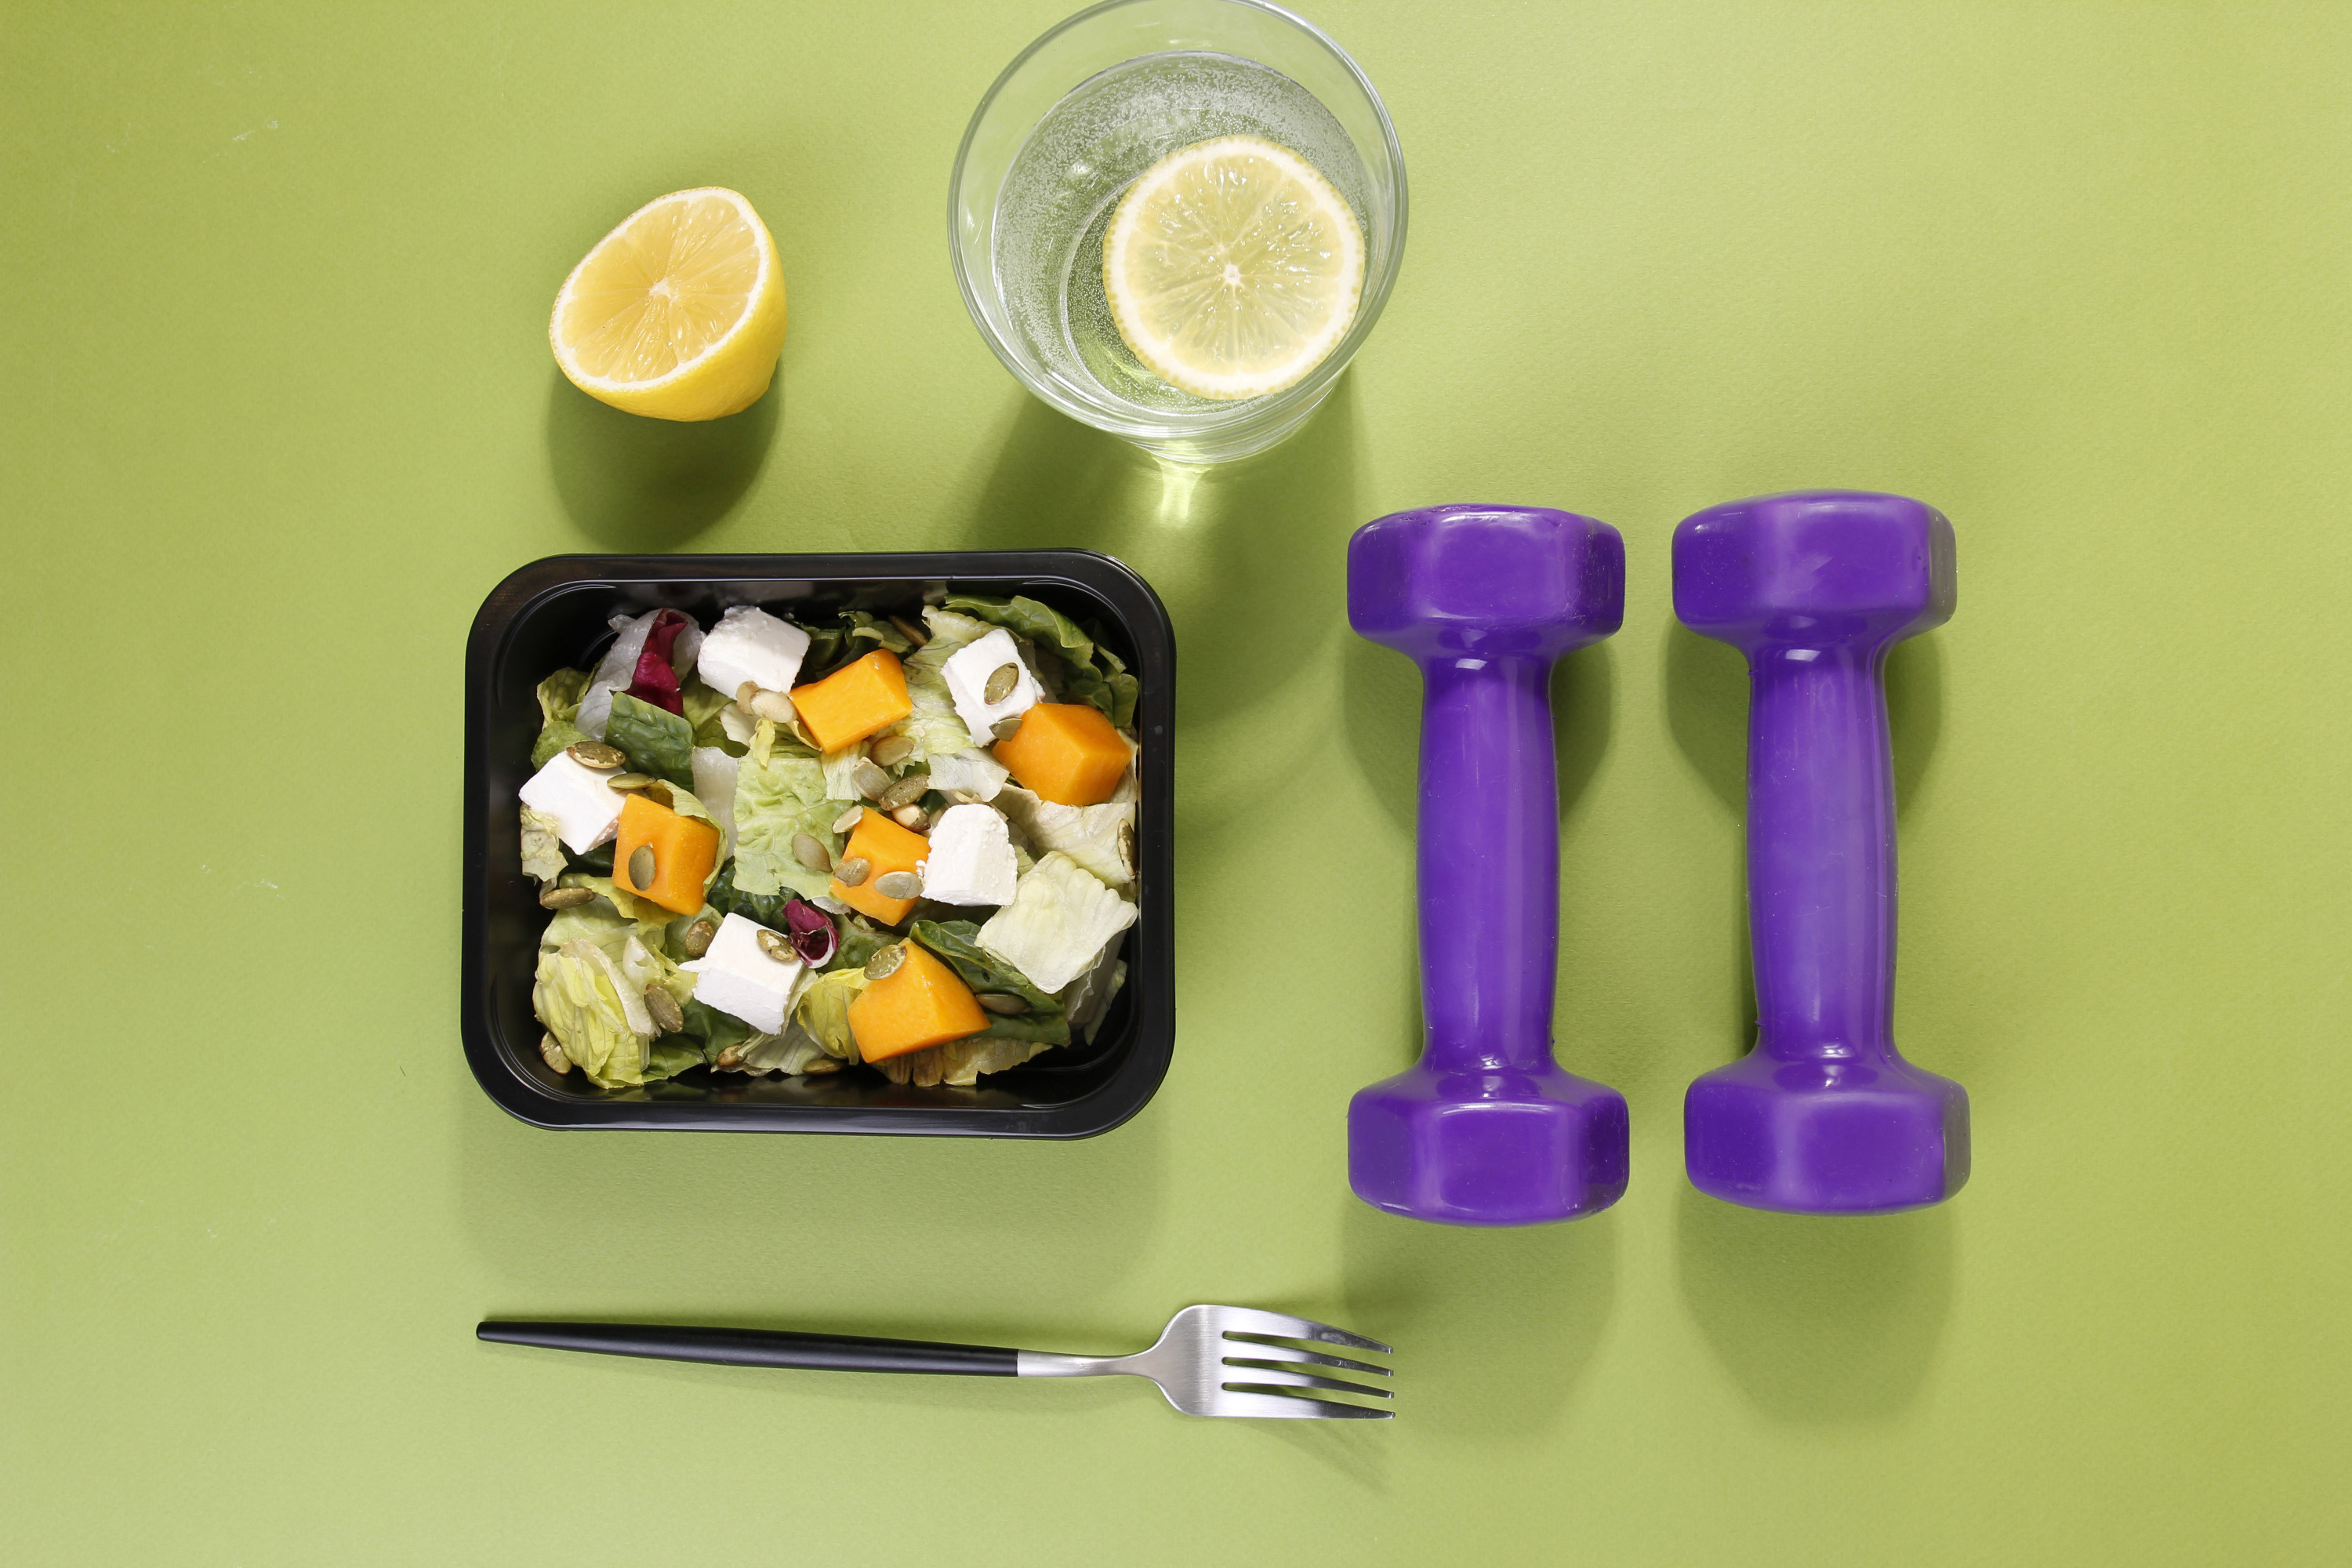 Программы питания Fitness lunch позволят сбросить до 10% веса в месяц